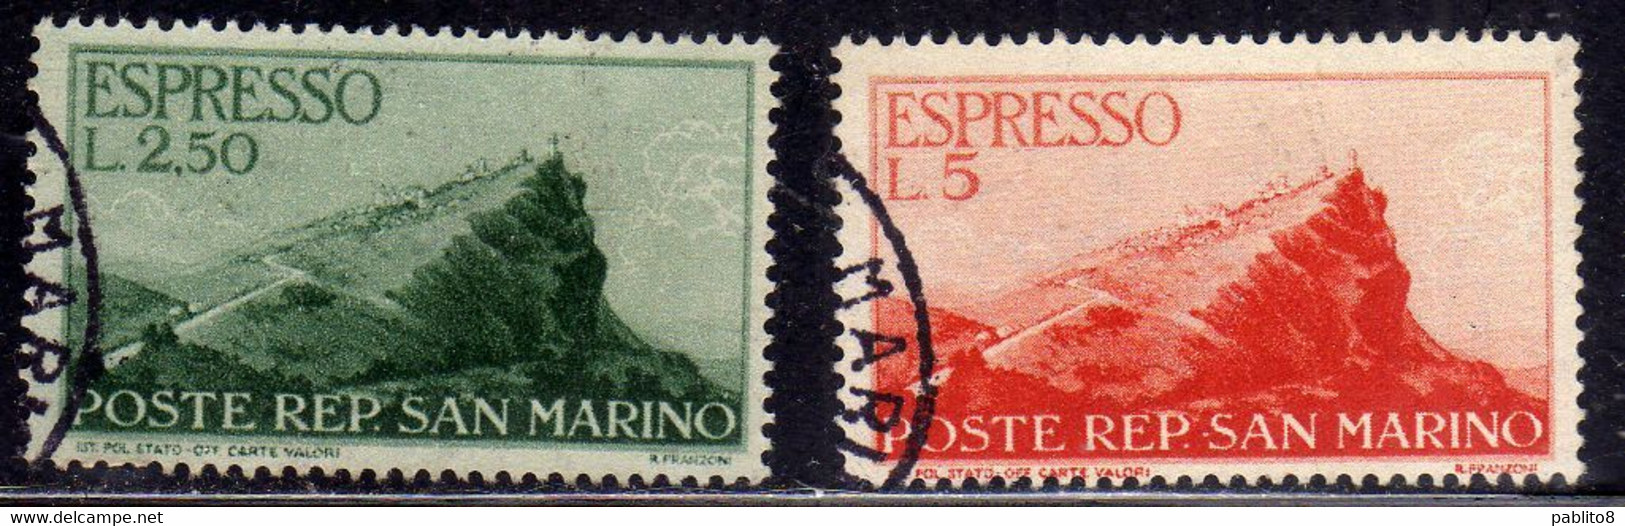 REPUBBLICA DI SAN MARINO 1945 ESPRESSI SPECIAL DELIVERY VEDUTE VIEWS SERIE COMPLETA COMPLETE SET USATA USED OBLITERE' - Express Letter Stamps